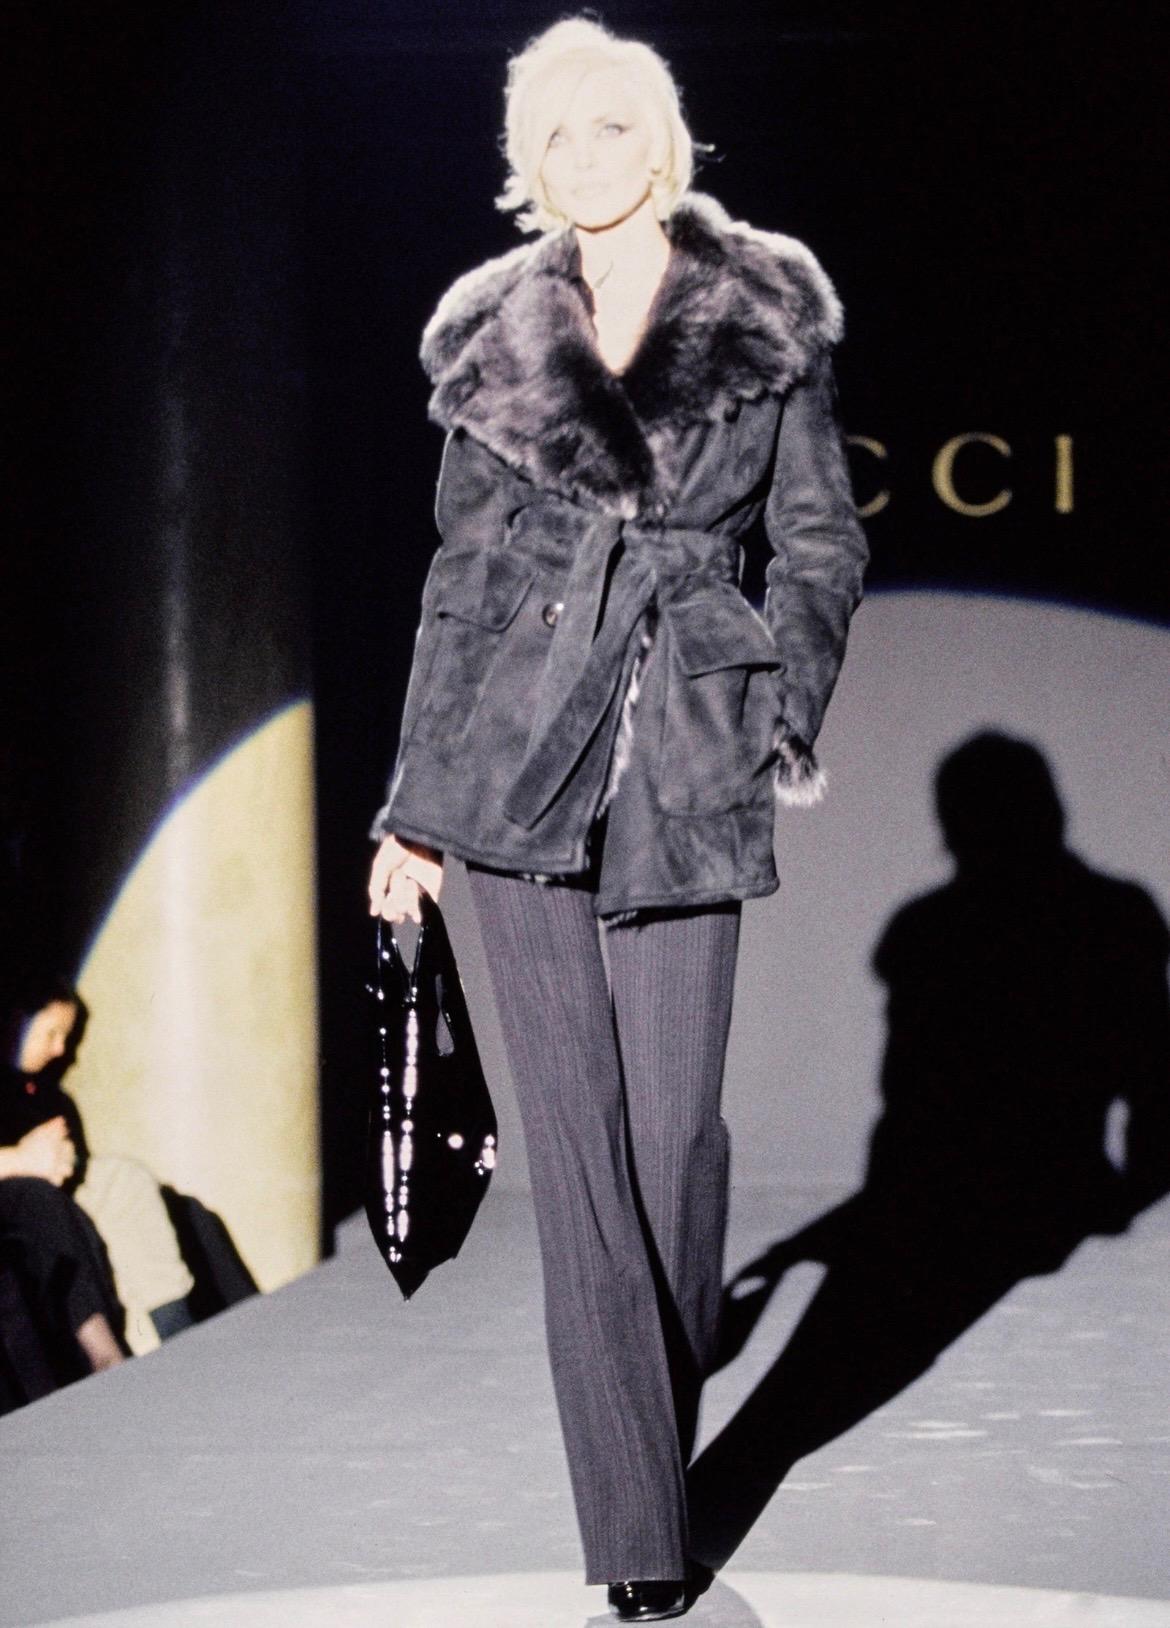 Wir präsentieren einen fabelhaften schwarzen Gucci-Mantel aus Shearling-Wildleder, entworfen von Tom Ford. Dieser Mantel aus der Herbst/Winter-Kollektion 1995 wurde auf dem Laufsteg als Teil des Looks 17 präsentiert und von Nadja Auermann